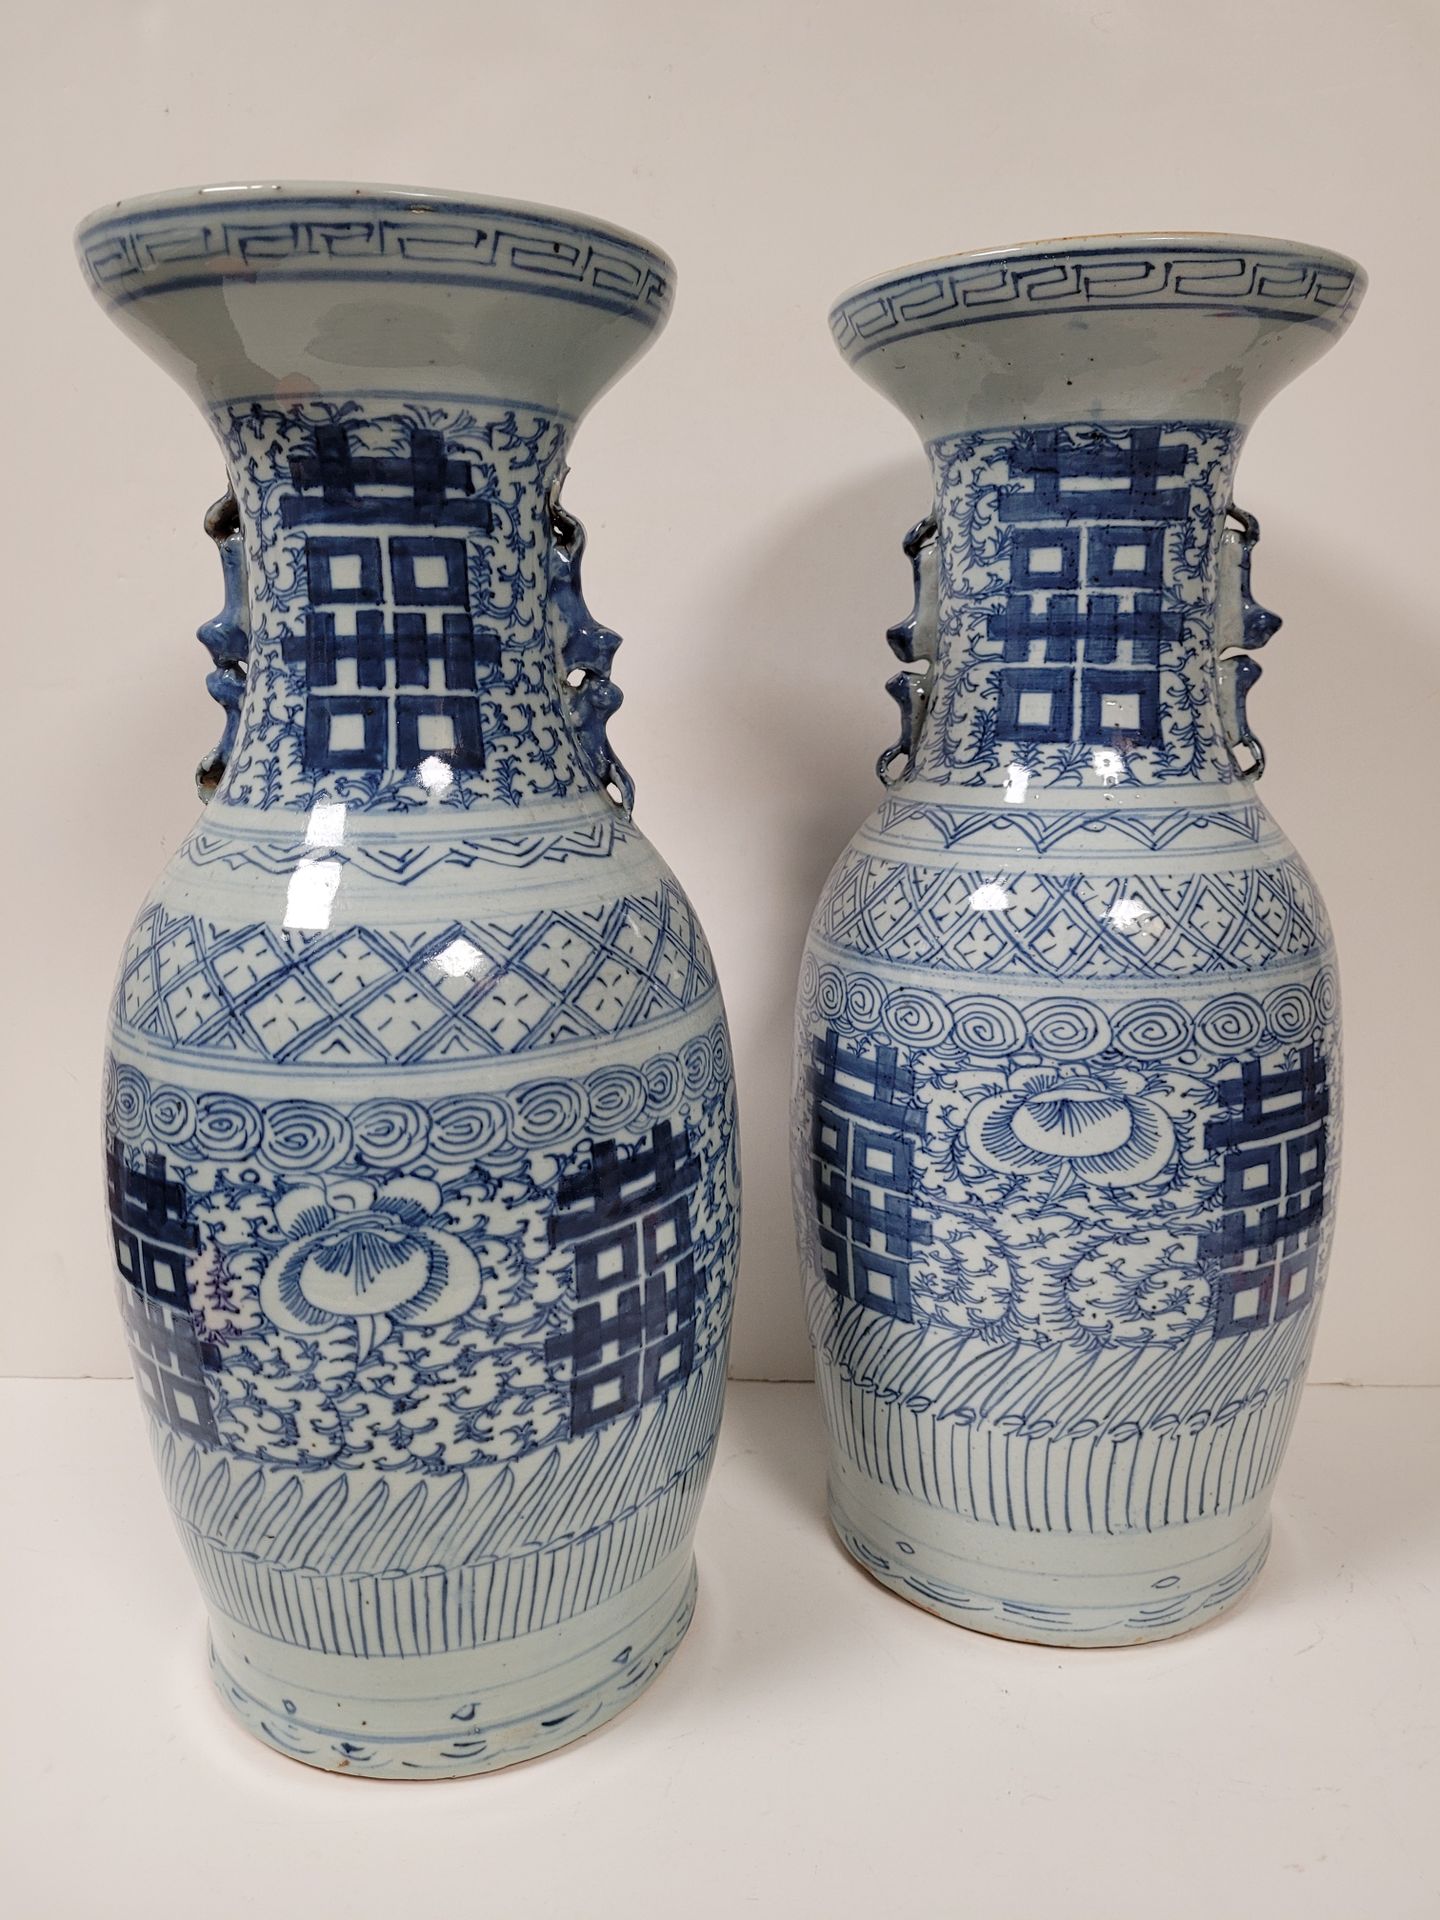 Null 中国，20世纪一对
青花瓷花瓶，青花纹饰为双喜字和希腊门楣，背景为树叶，把手为双喜字形式
。
 
高度：45厘米，
颈部有裂痕，修复过。